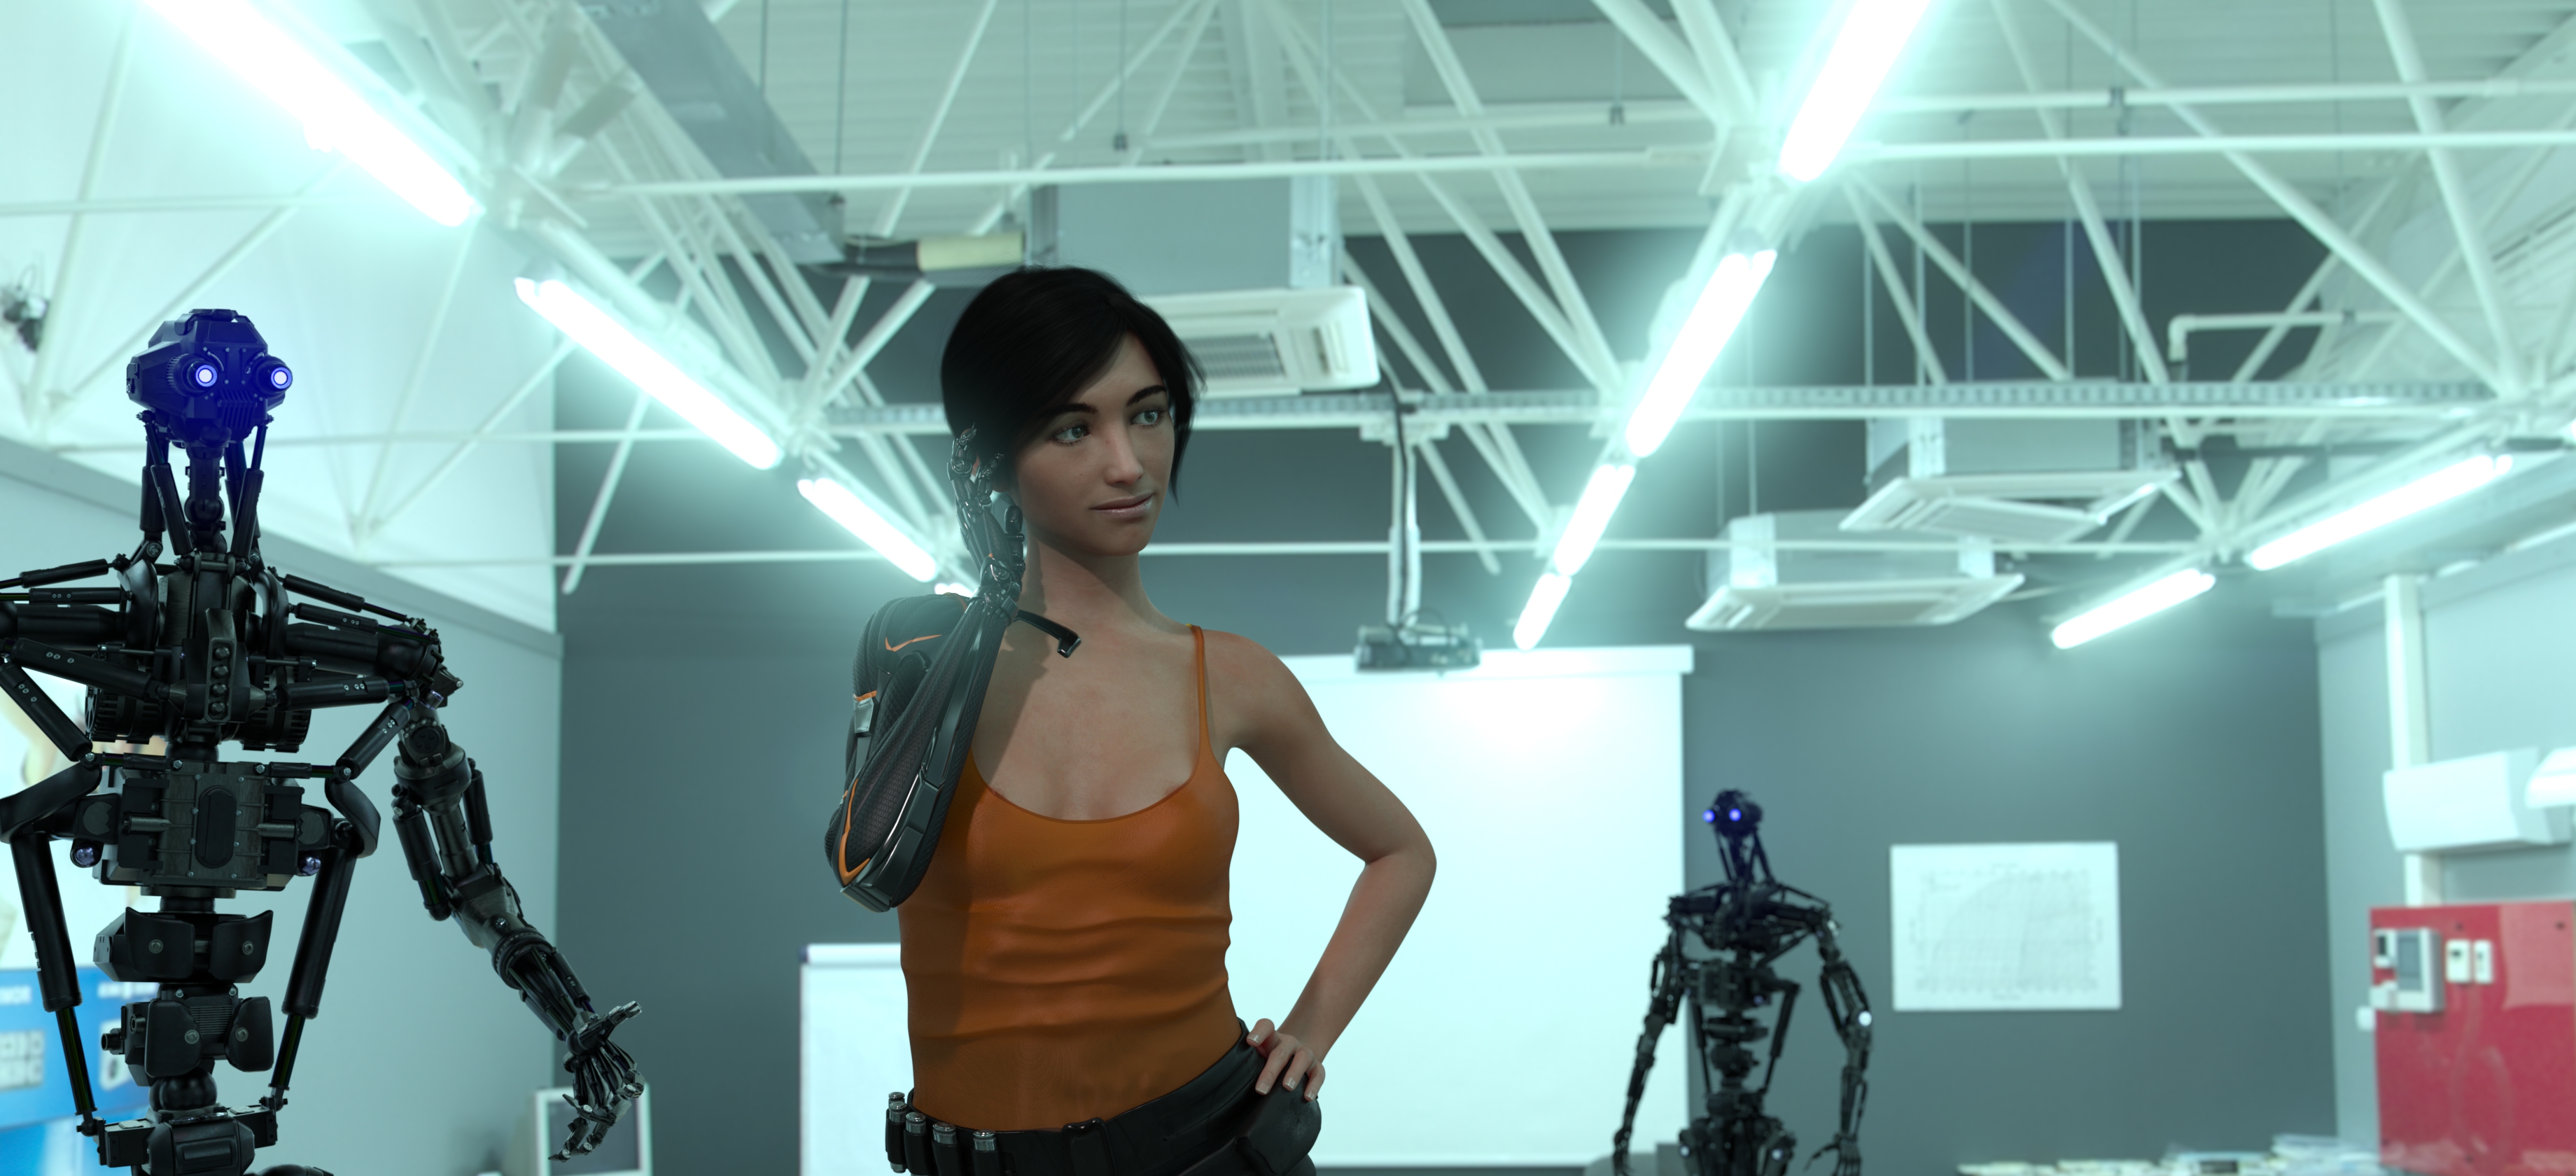 免费照片短片《Cybershik》中的萨基拉-罗丹（Sakira Rodaun）在与机器人训练师一起康复后的定向培训期间。